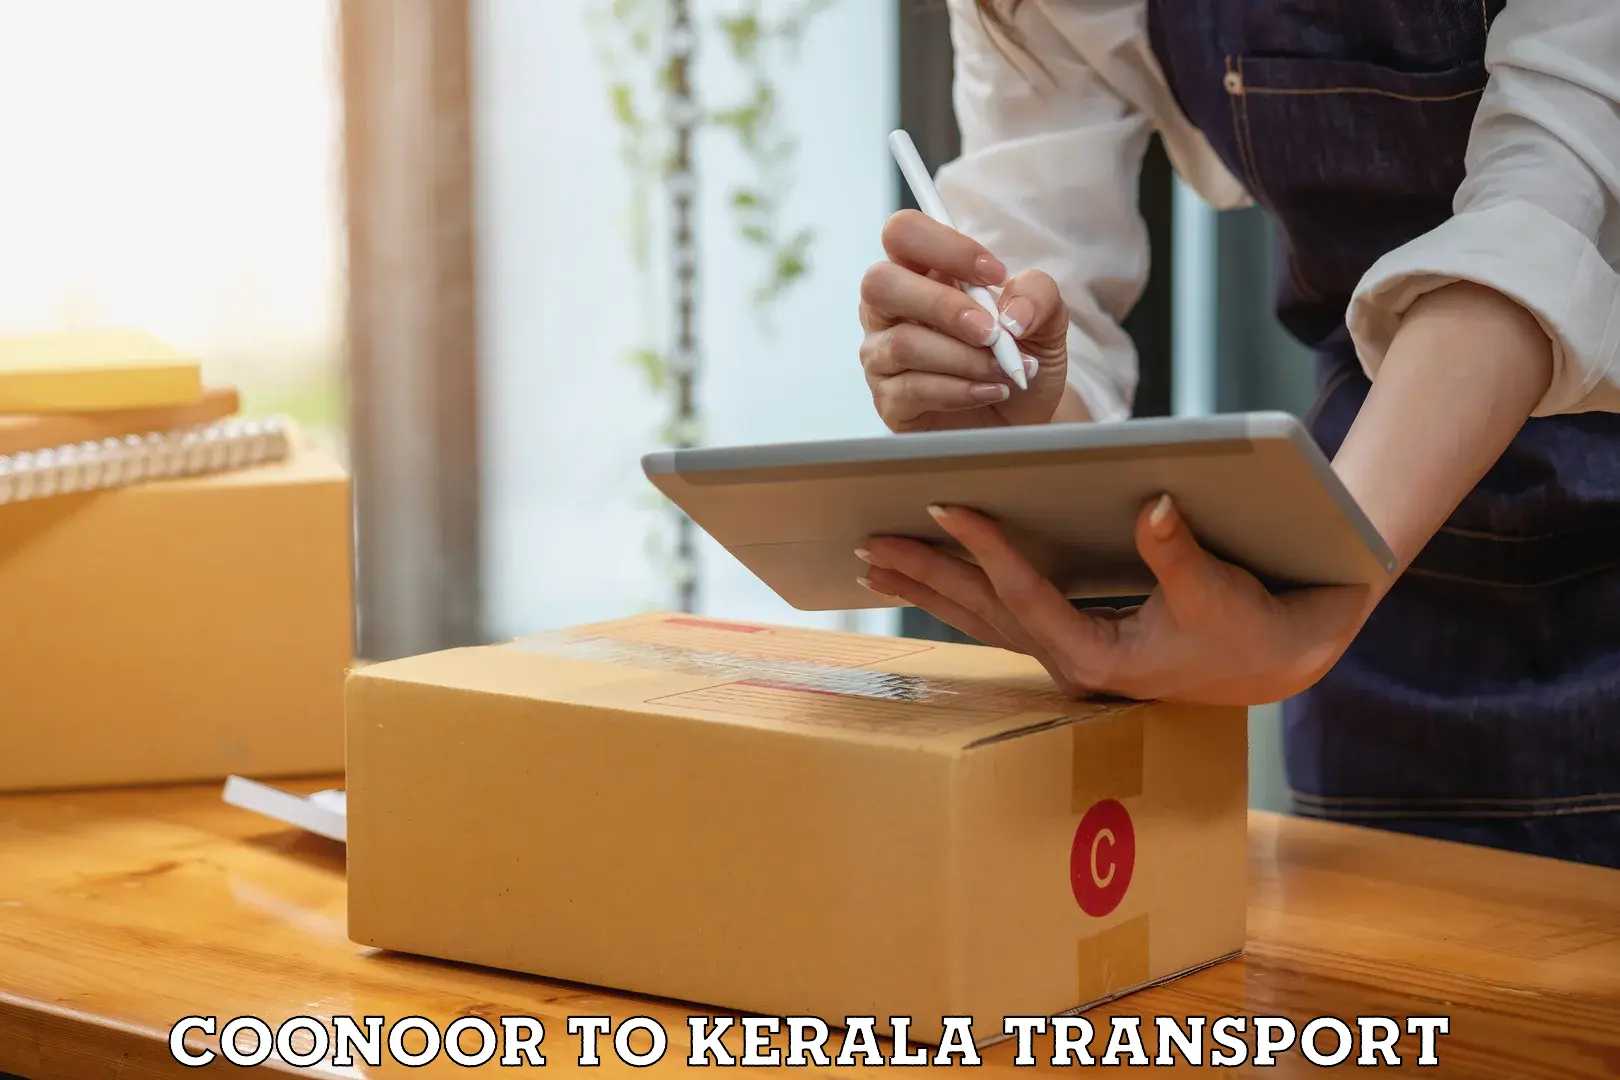 Online transport service Coonoor to Koothattukulam